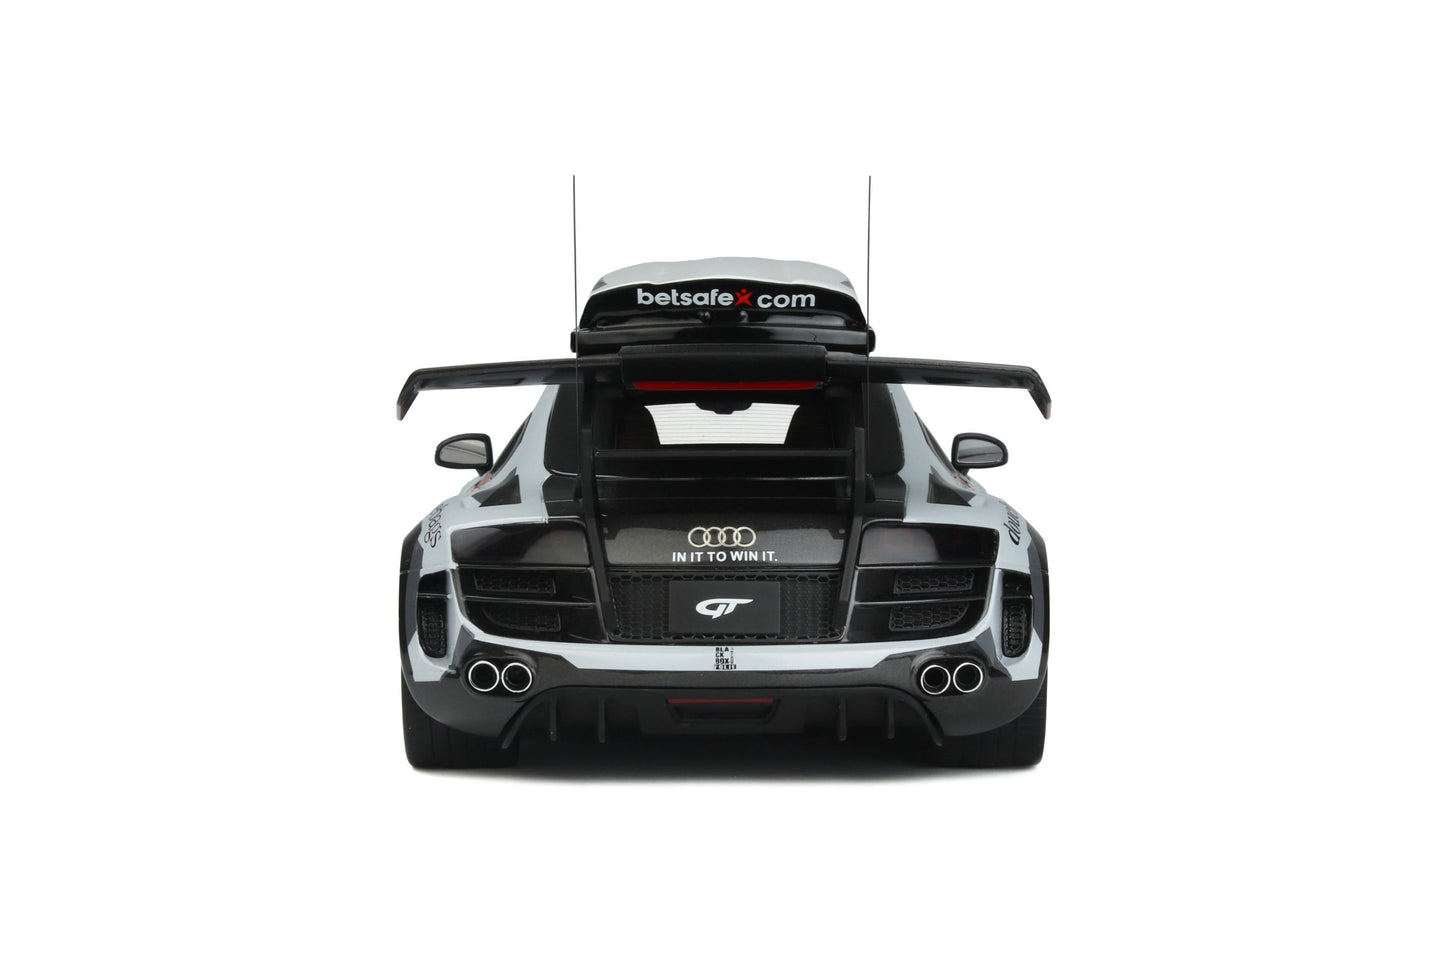 GT Spirit - Jon Olsson Audi R8 V10 PPI Razor GTR "Gumball 3000" (Betsafe) 1:18 Scale Model Car